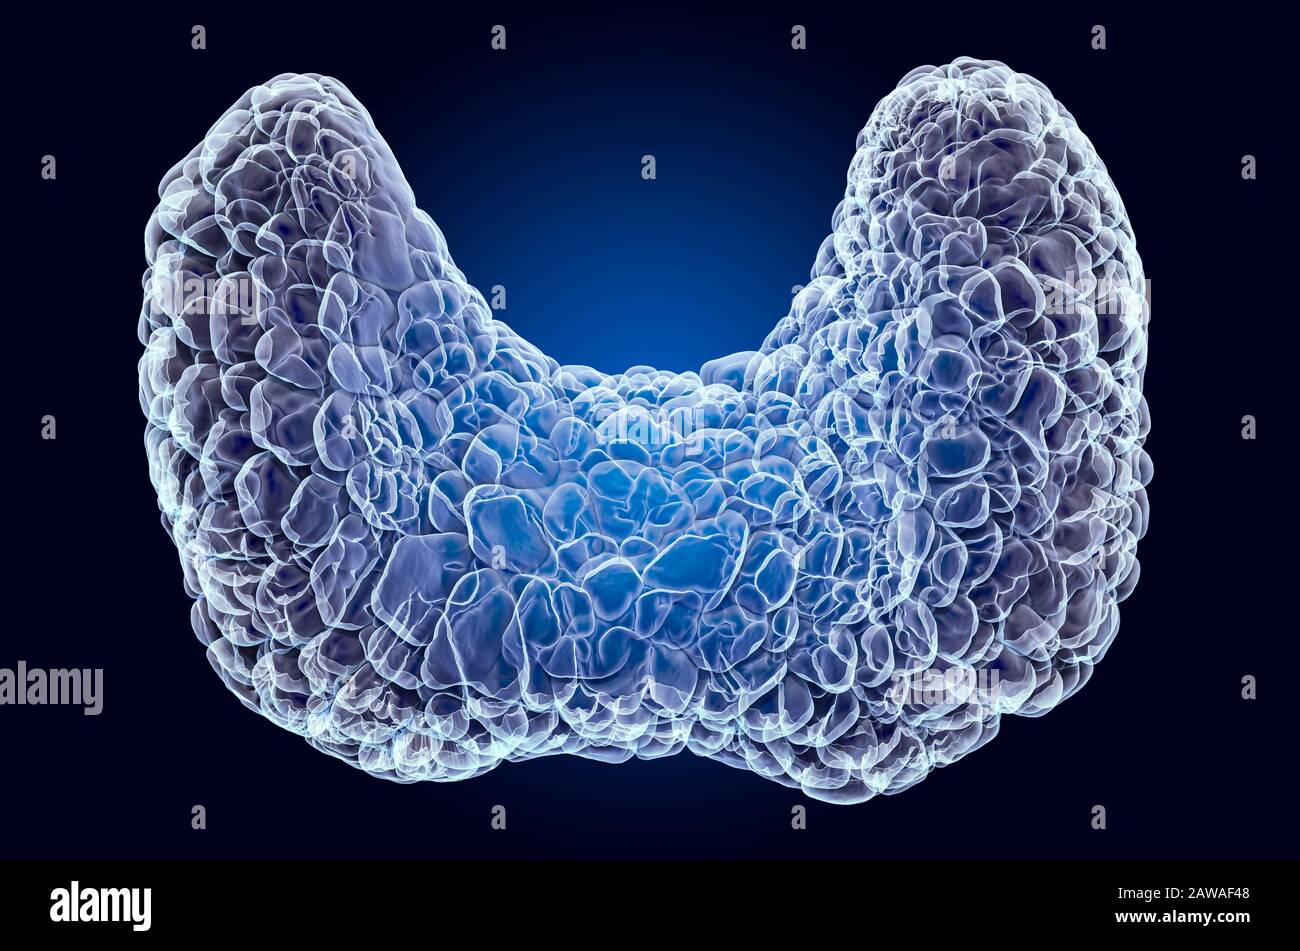 Schilddrüse des Menschen, Röntgenhologramm. 3D-Rendering auf dunkelblauem Hintergrund Stockfoto